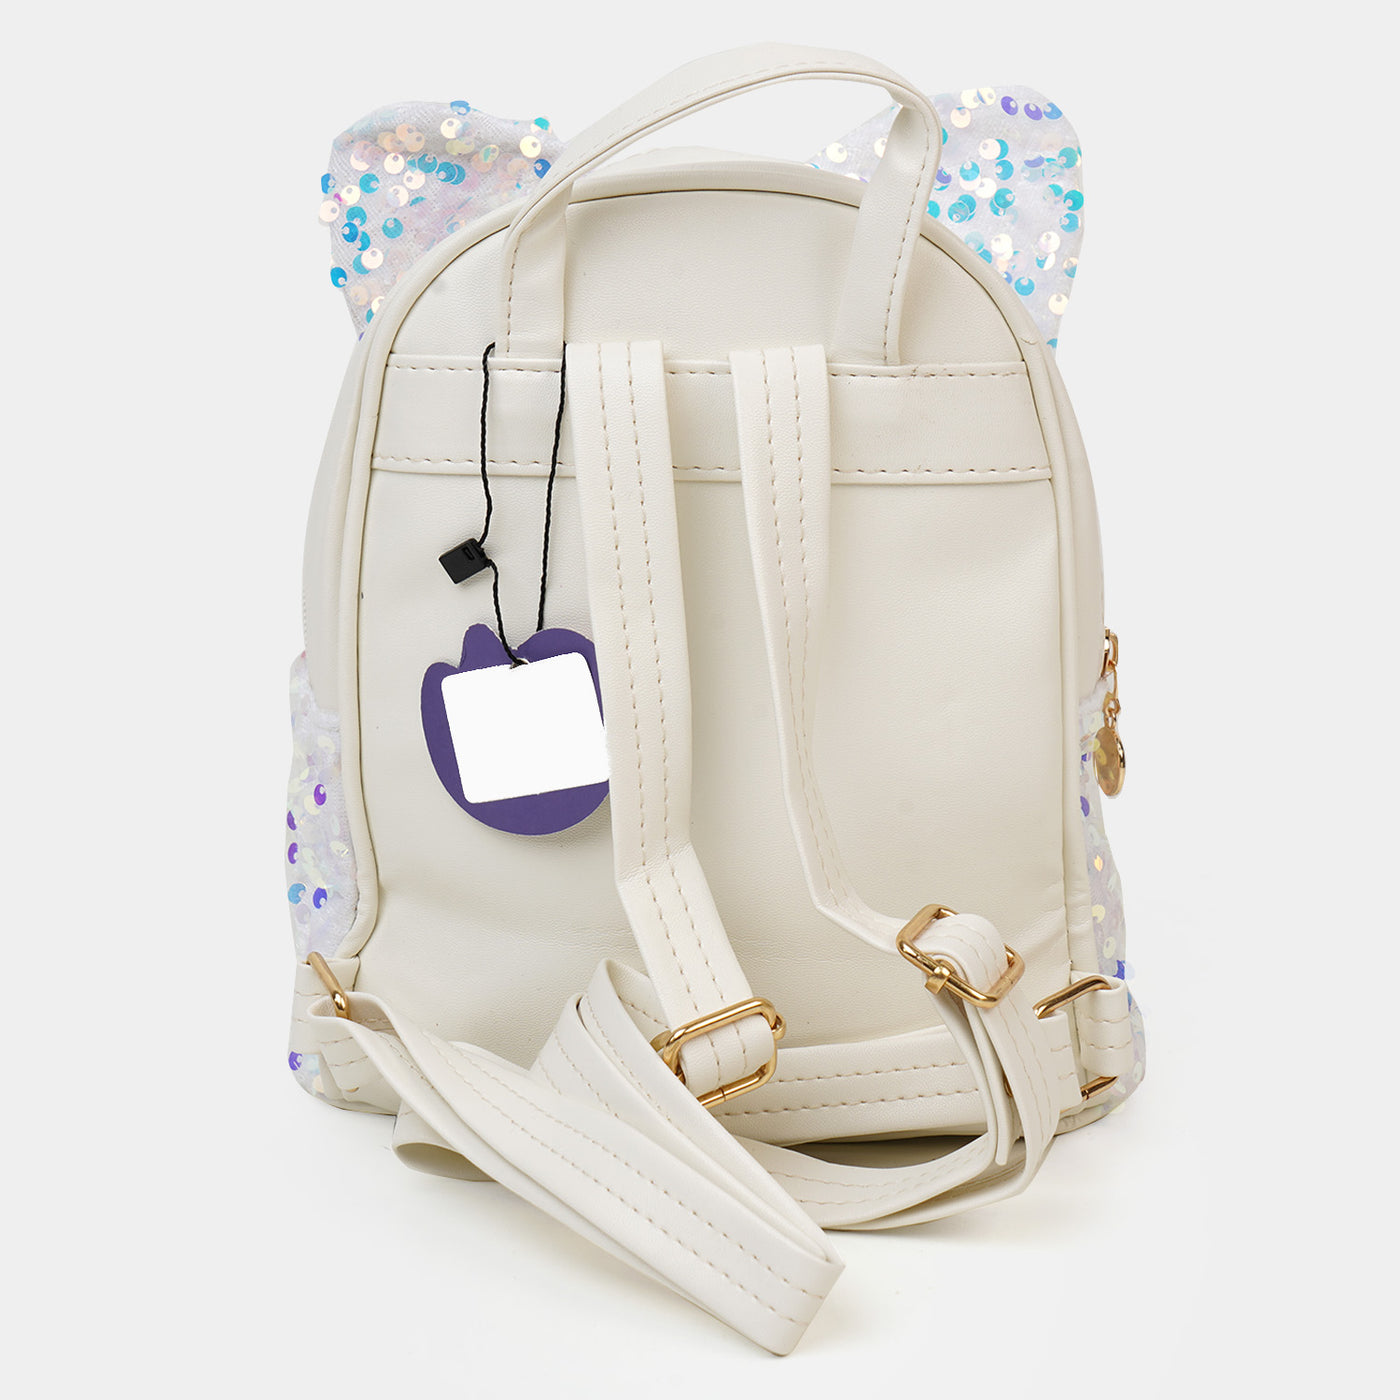 Fancy Backpack Multipurpose For Girls